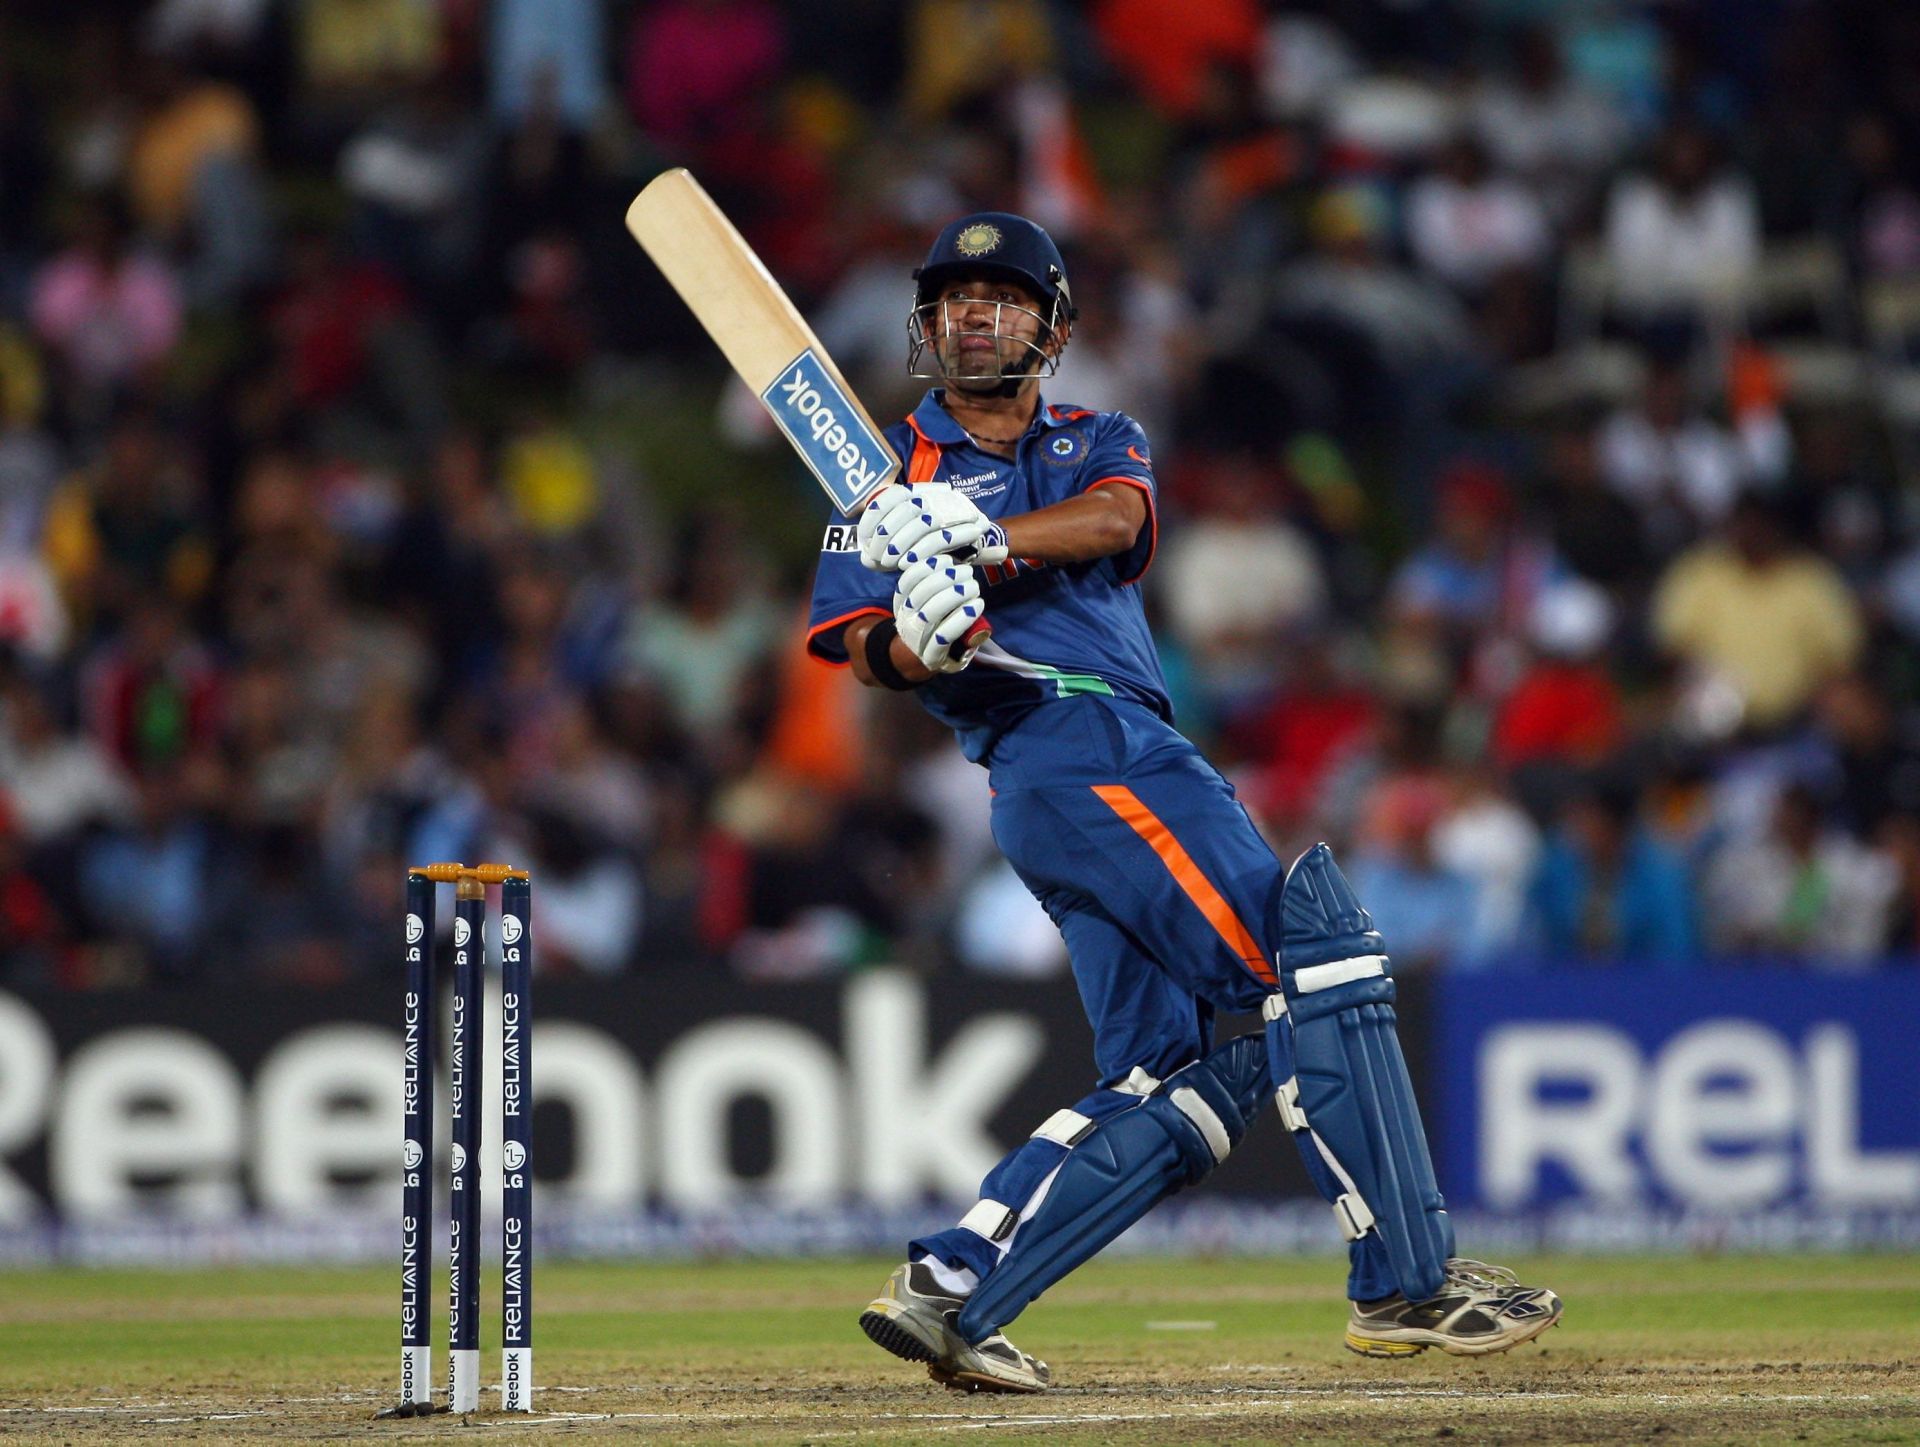 Gautam Gambhir has played some memorable knocks against Pakistan. (Pic: Getty Images)